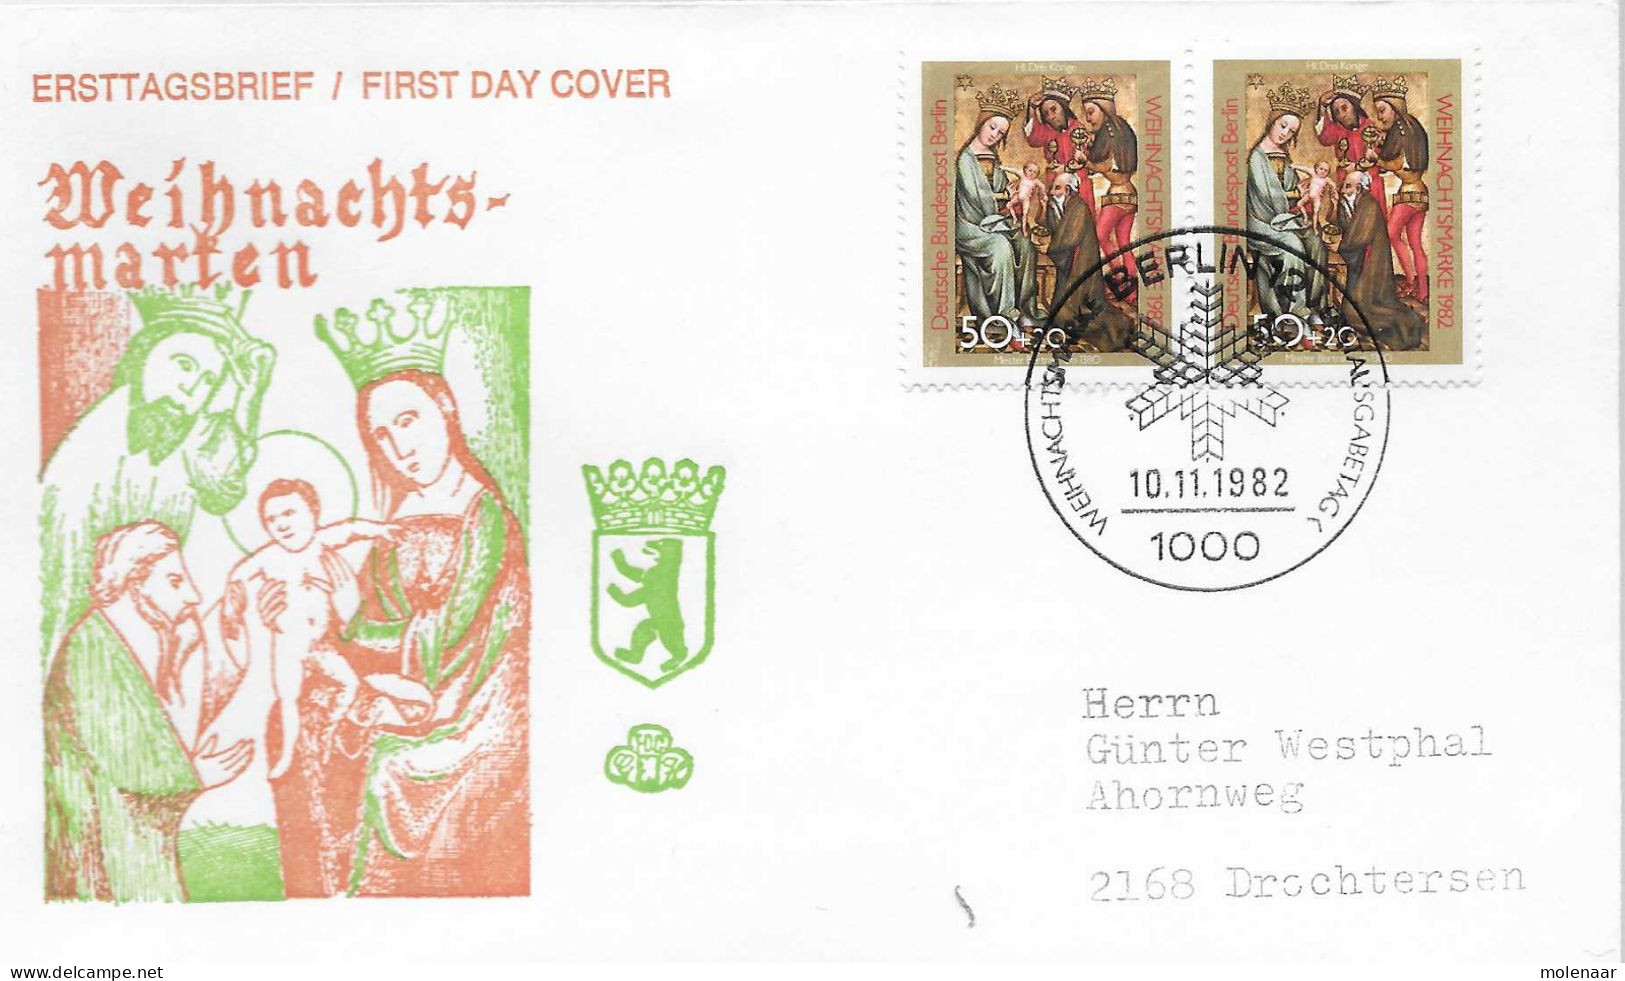 Postzegels > Europa > Duitsland > Berlijn > 1980-1990> Brief Met No. 698 2x (17184) - Brieven En Documenten